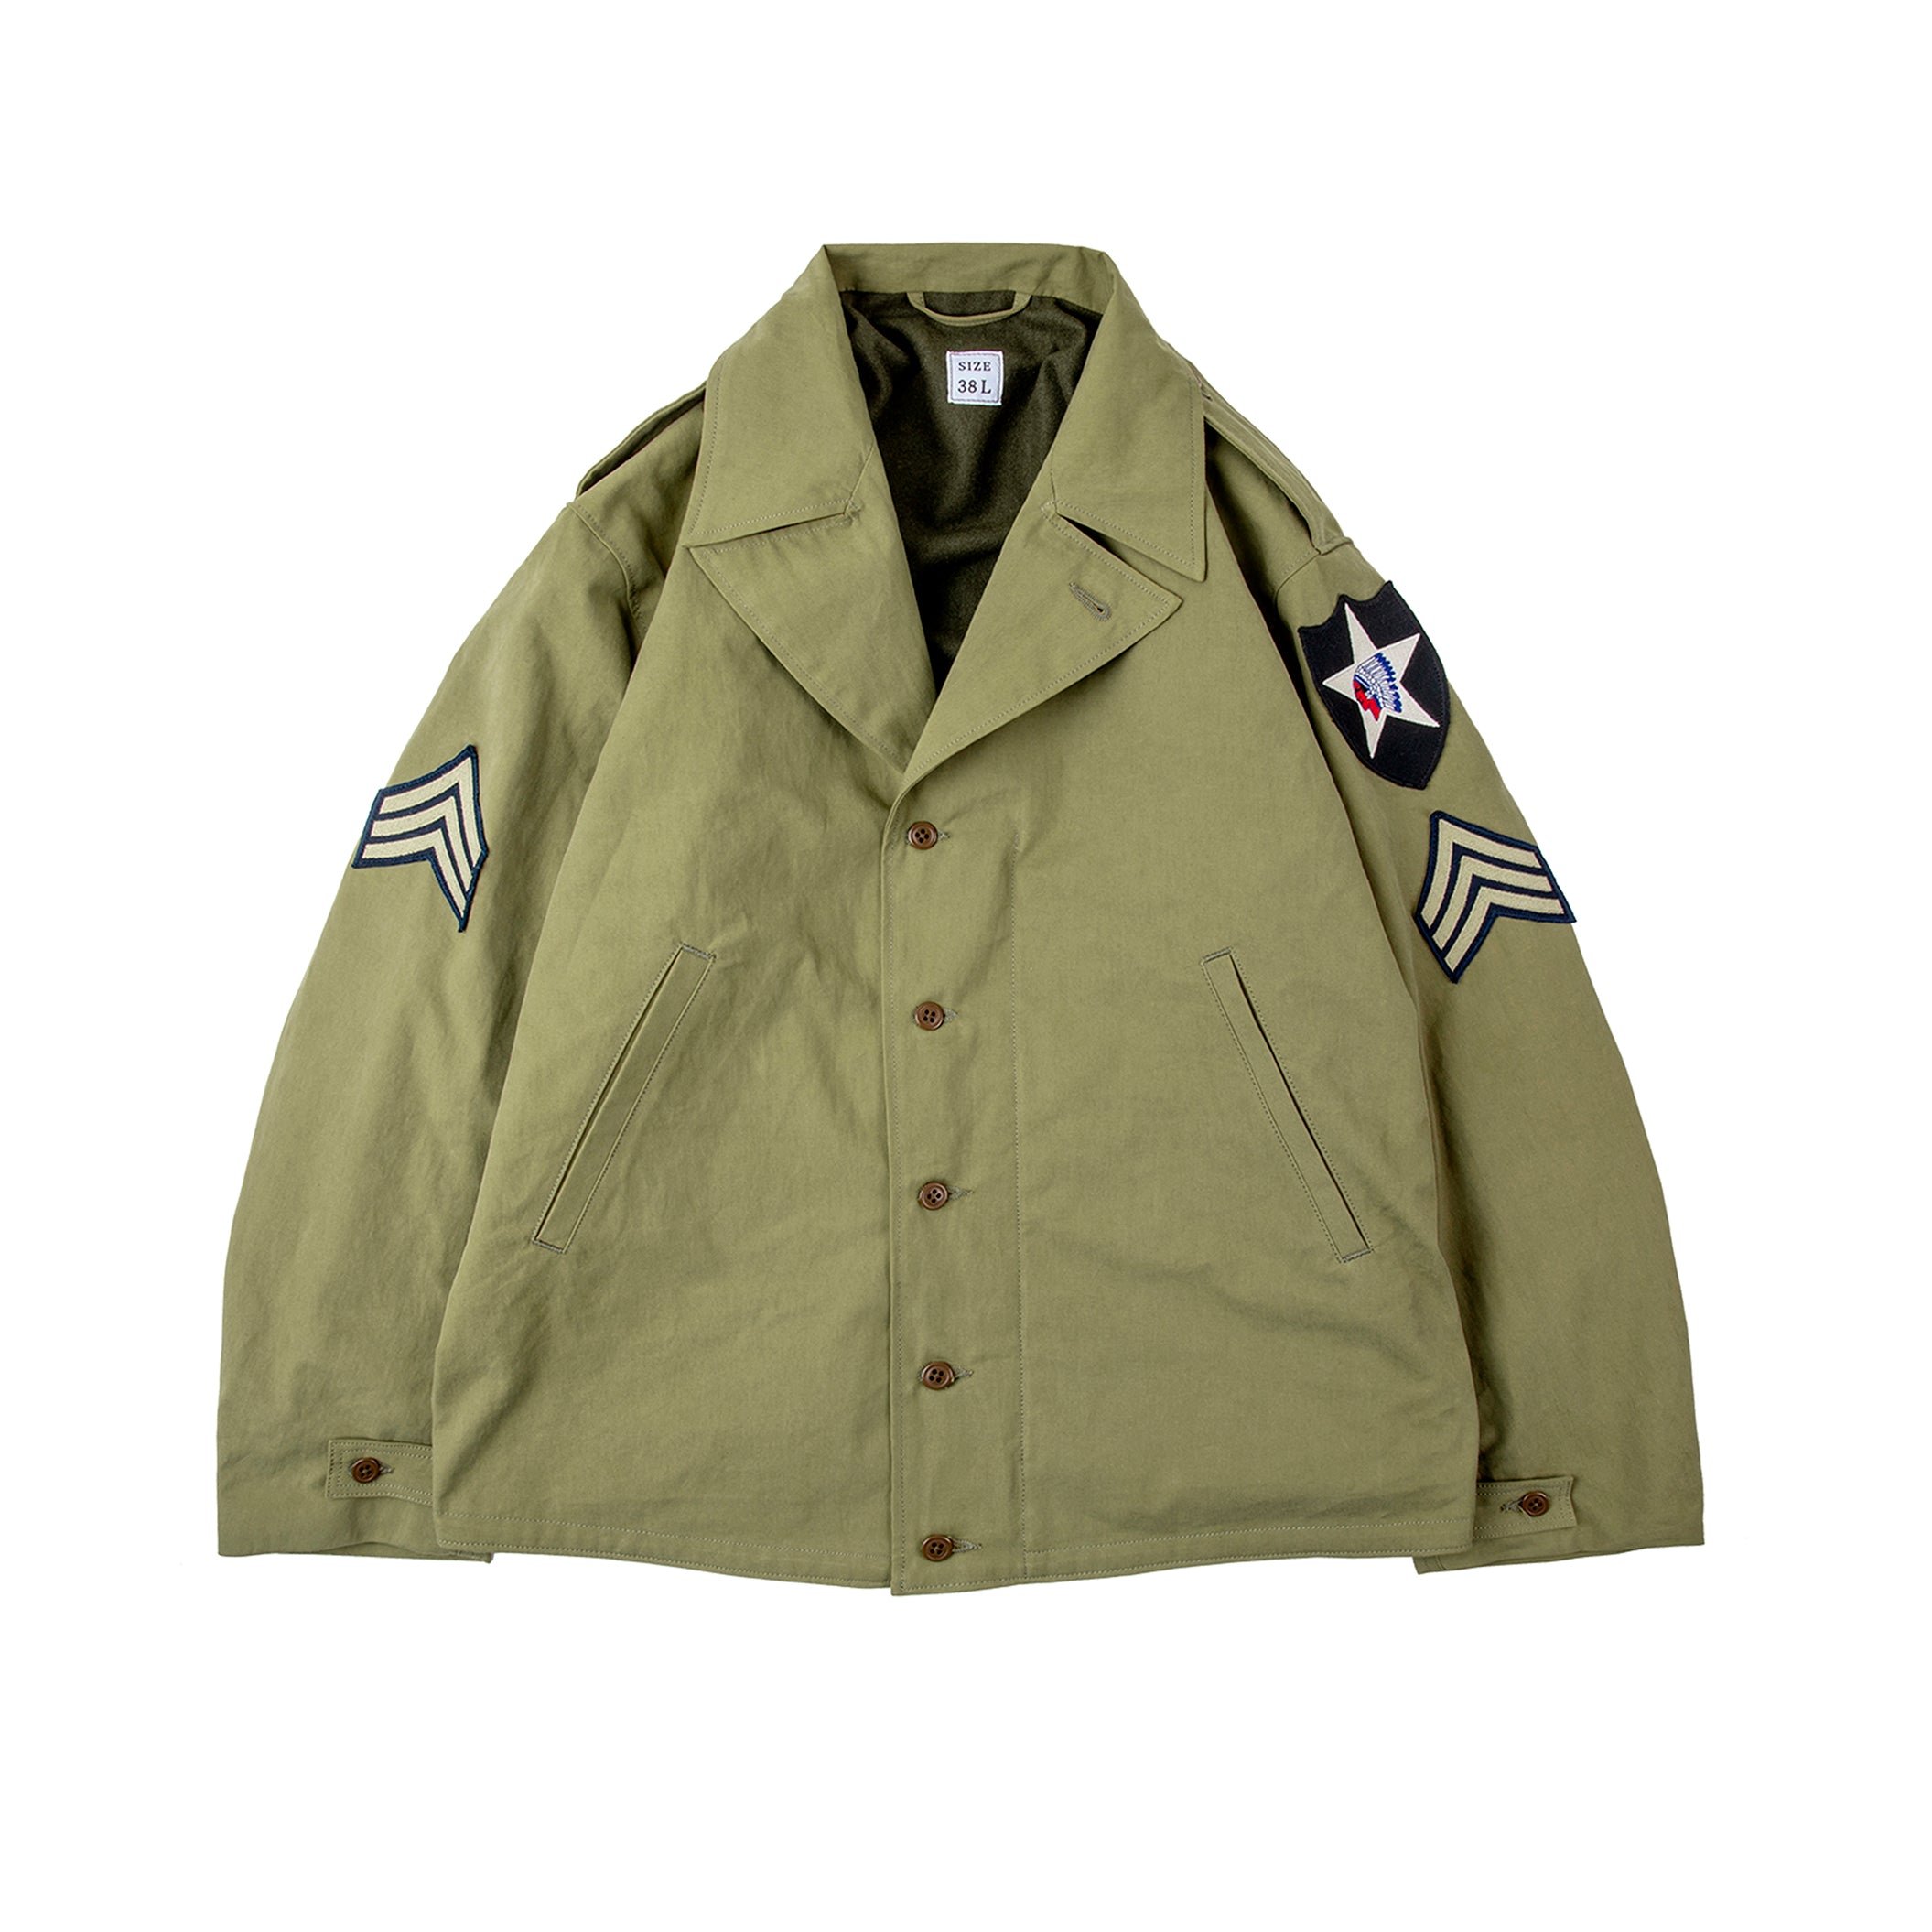 Army Field Tank Suit Retro Tooling Windbreaker Jacket